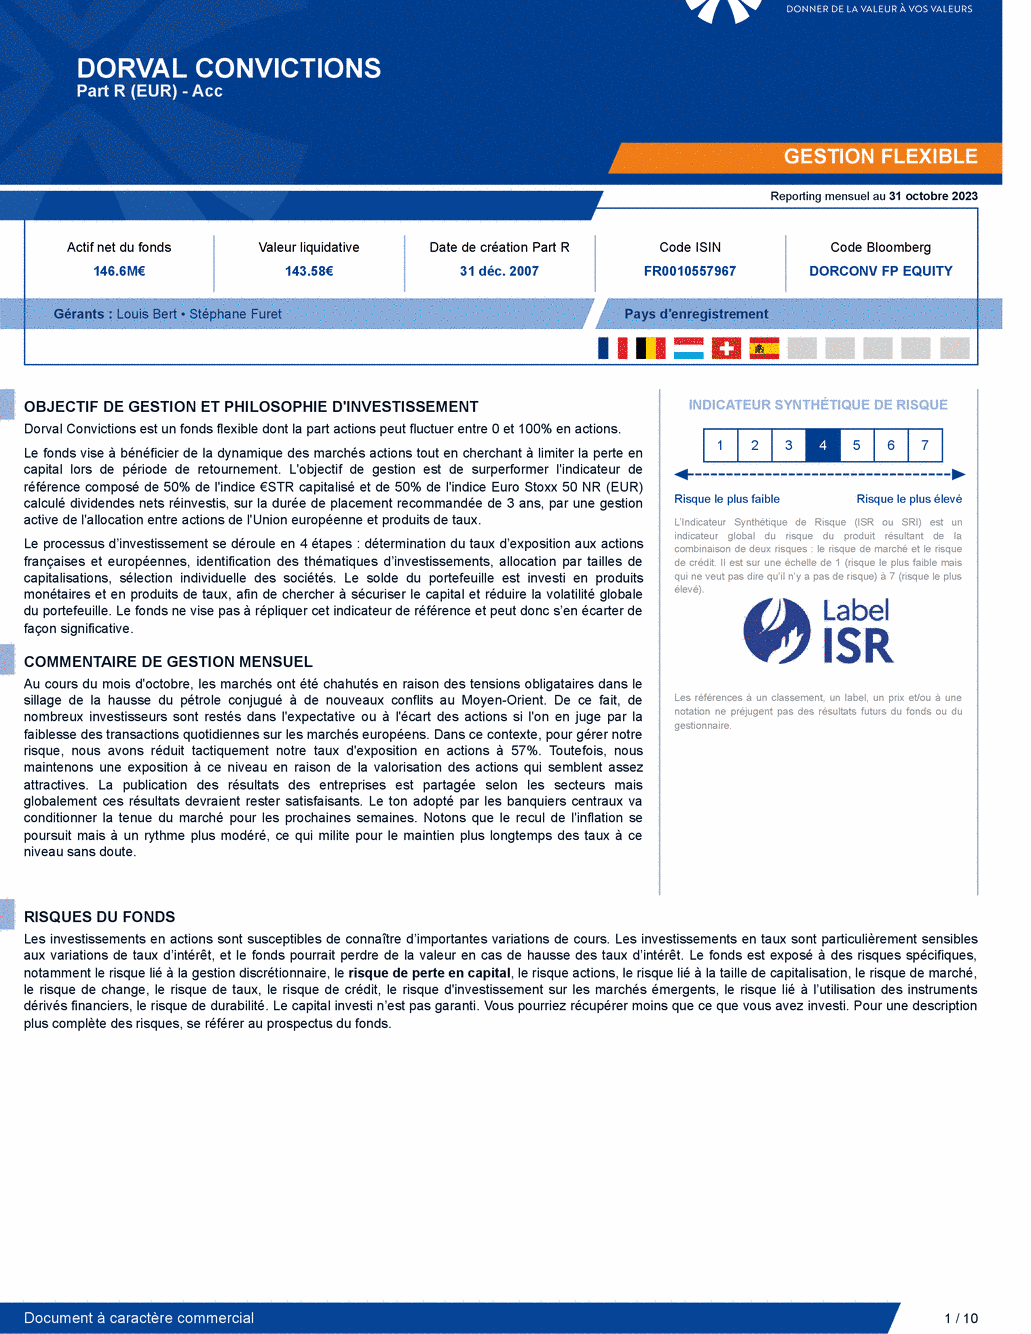 Reporting DORVAL CONVICTIONS P - 31/10/2023 - Français